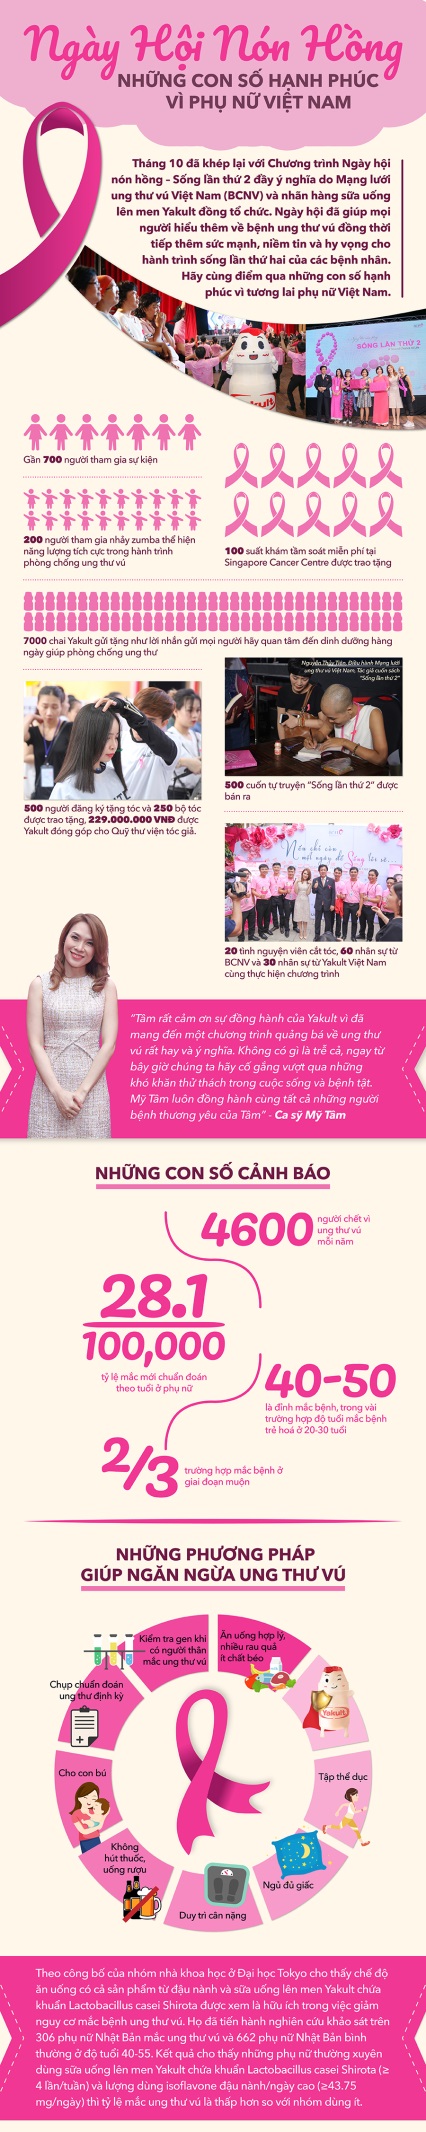 Ngày hội nón hồng: Những con số hạnh phúc vì phụ nữ Việt Nam - Ảnh 1.